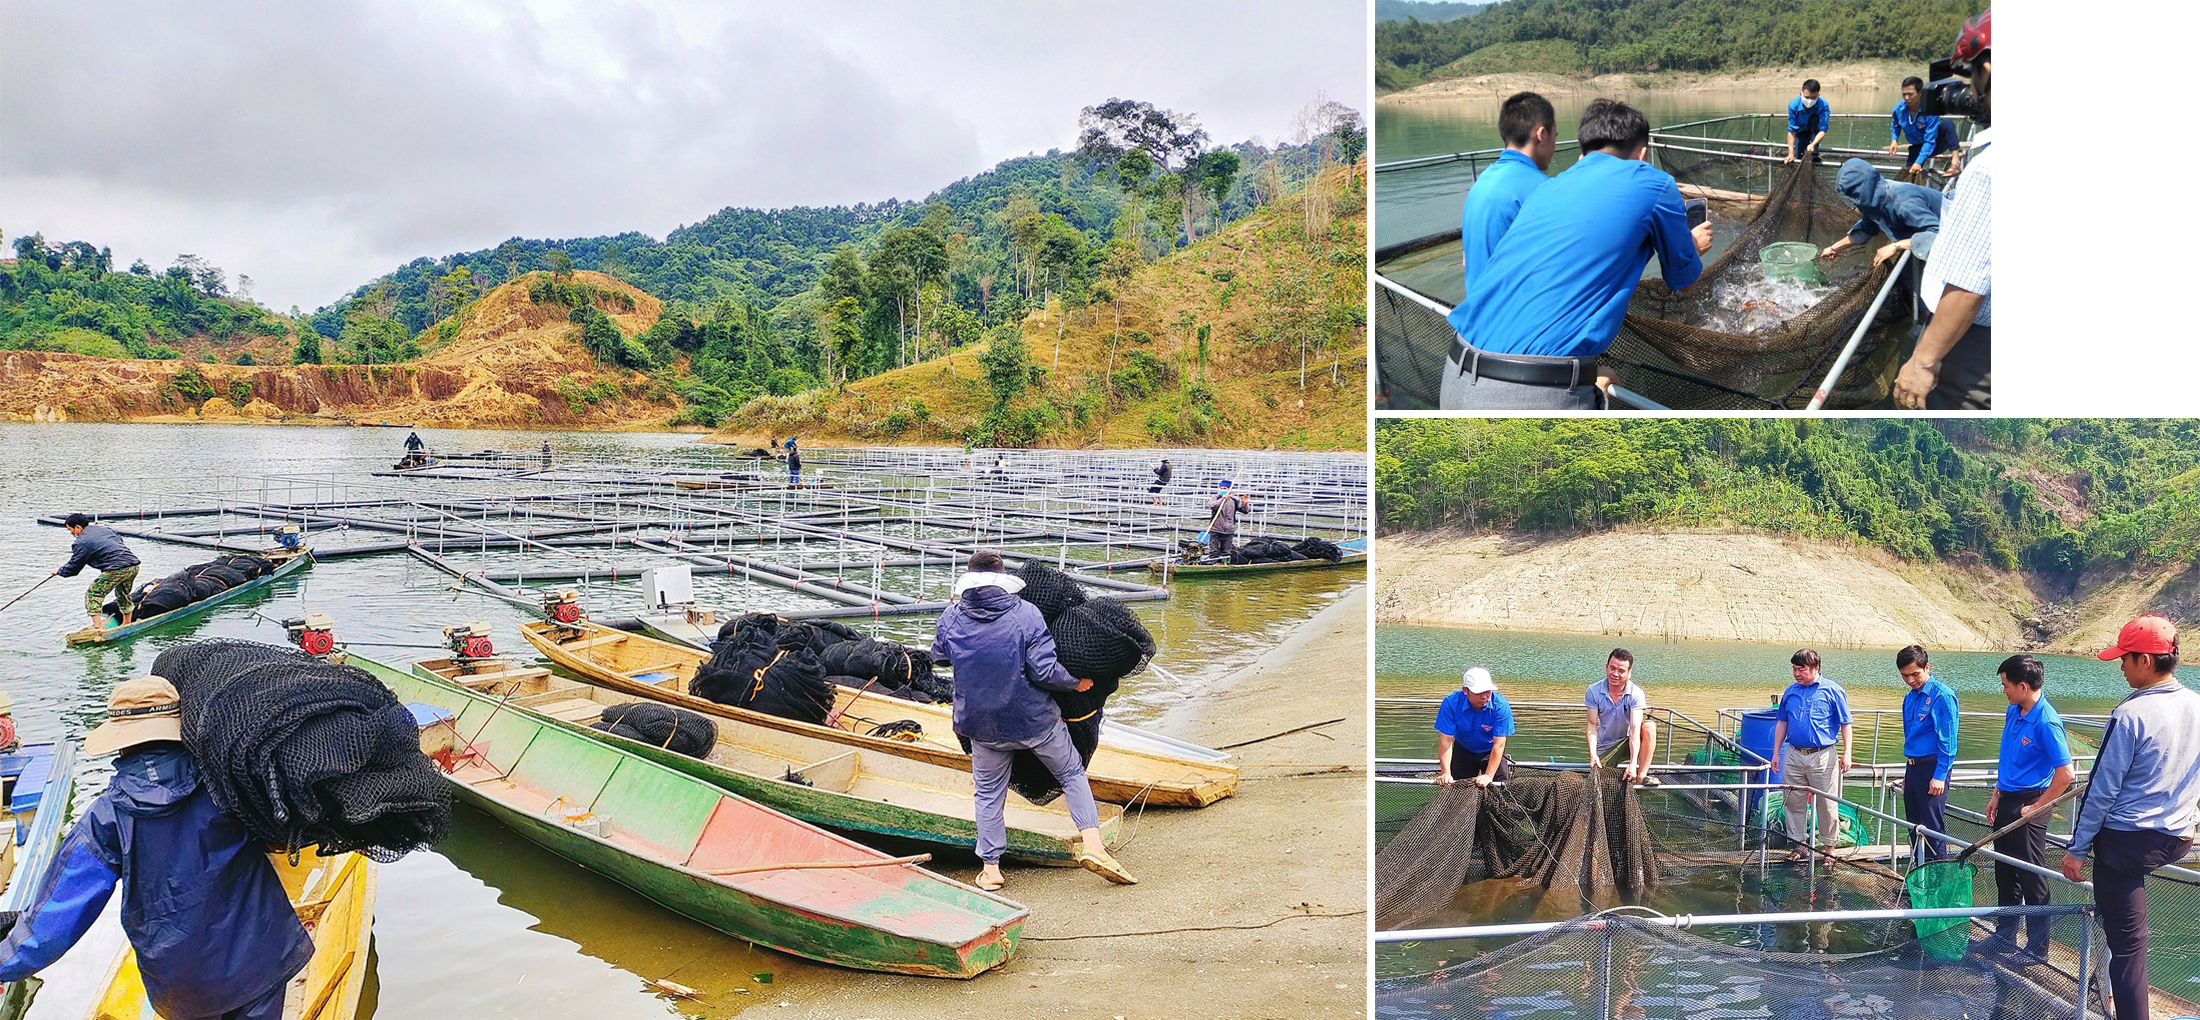 Hệ thống lồng cá của Hợp tác xã Nông nghiệp dịch vụ Hủa Na (bản Tục Pang, xã Đồng Văn) trên lòng hồ thủy điện Hủa Na.